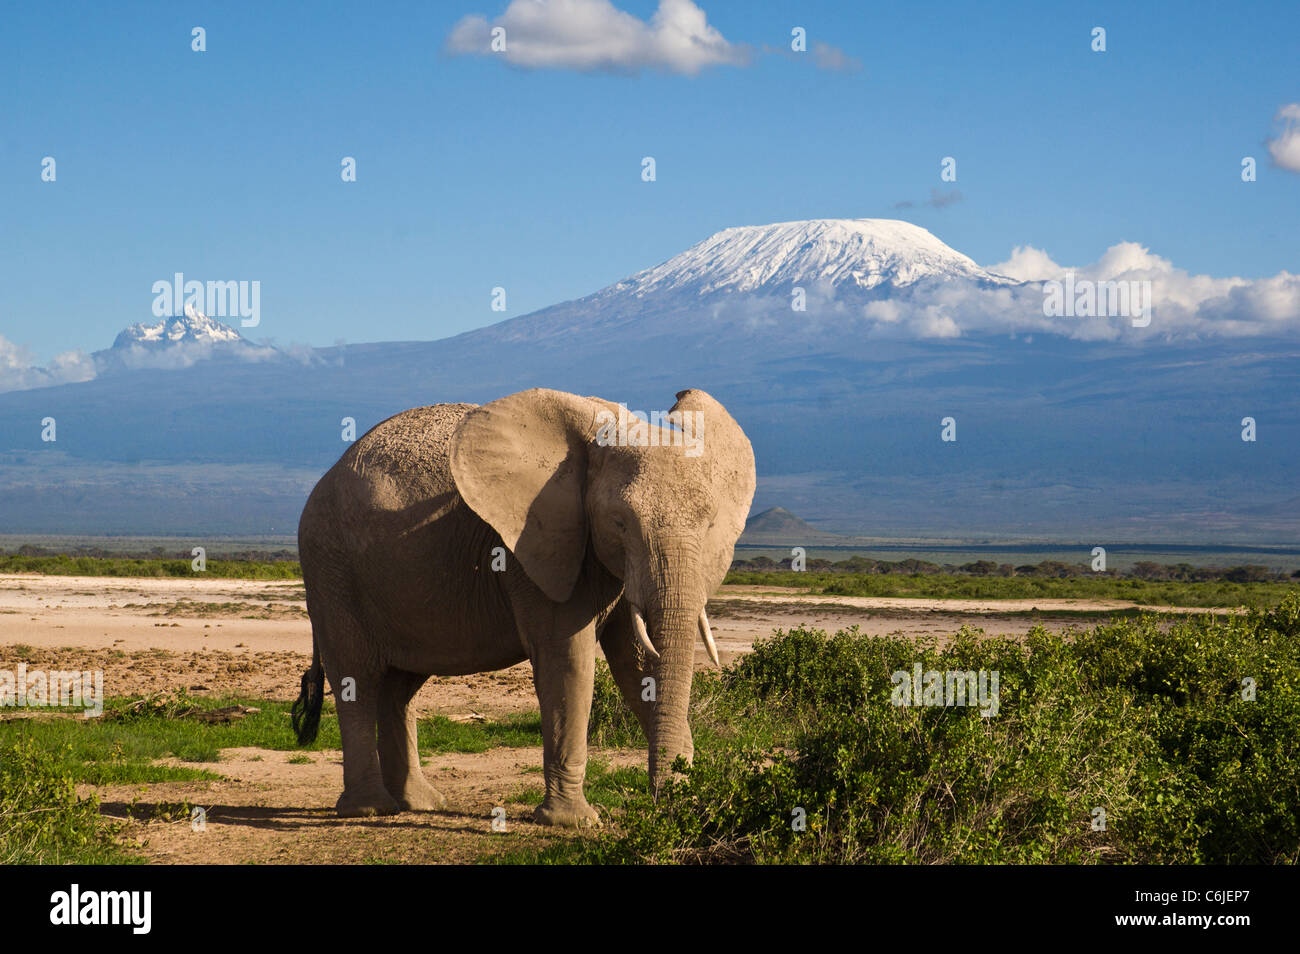 Un elefante solitario di alimentazione con Kibo picco, picco principale del Monte Kilimanjaro, in background, picco Mawenzi a sinistra. Foto Stock